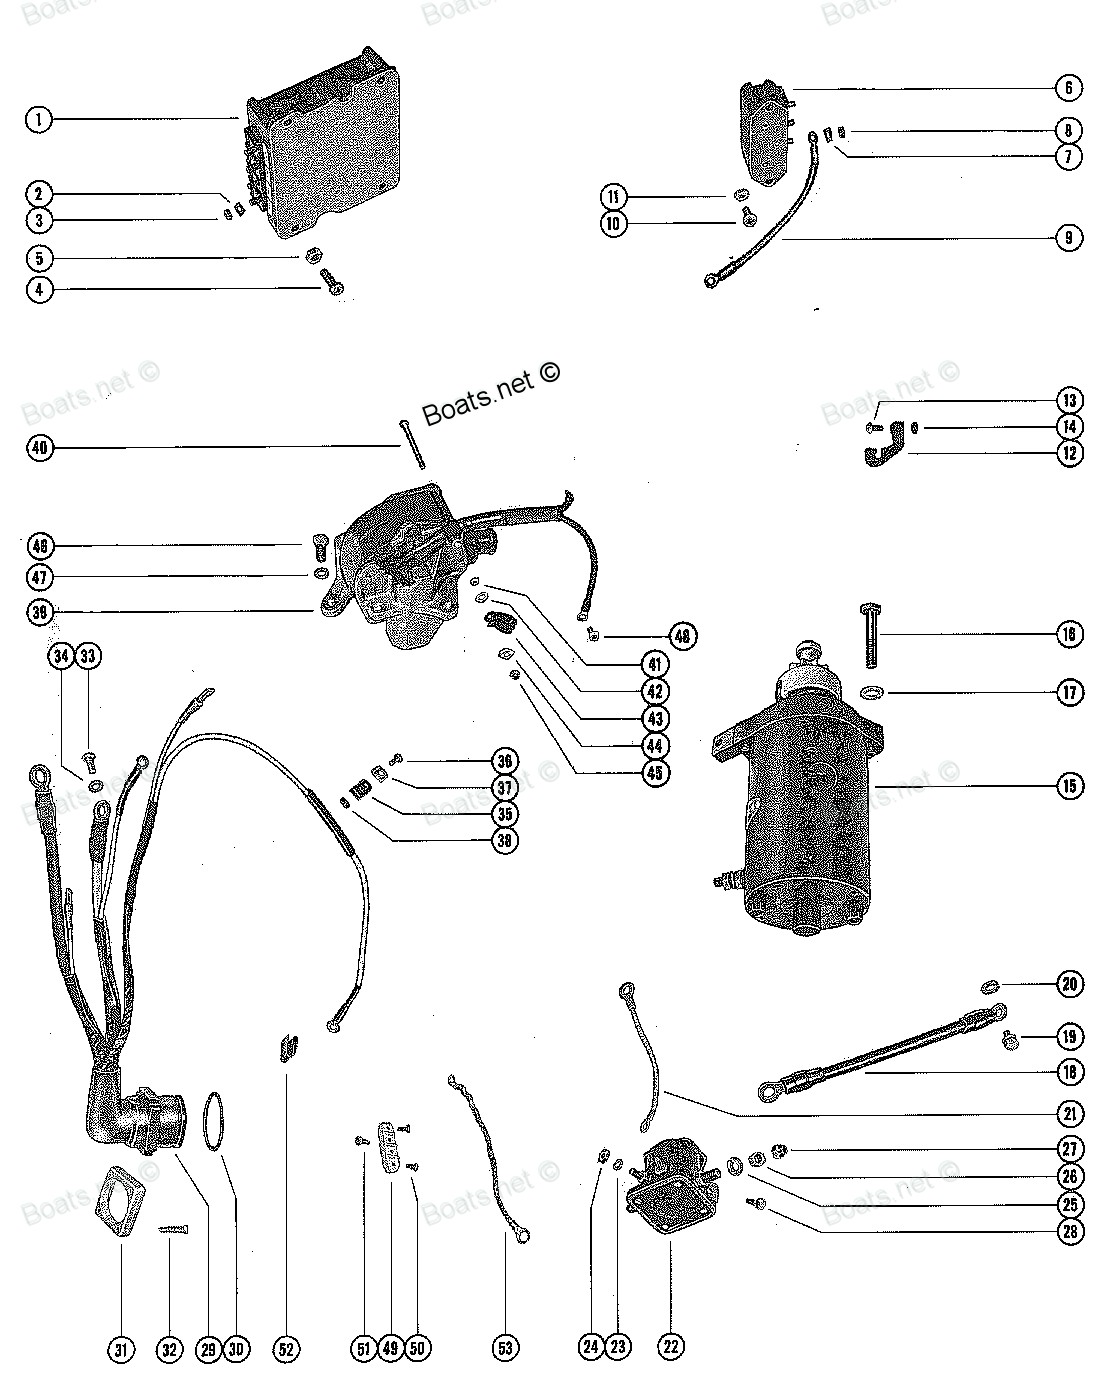 Marvelous Honda Gx160 Wiring Diagram Best Image Wiring